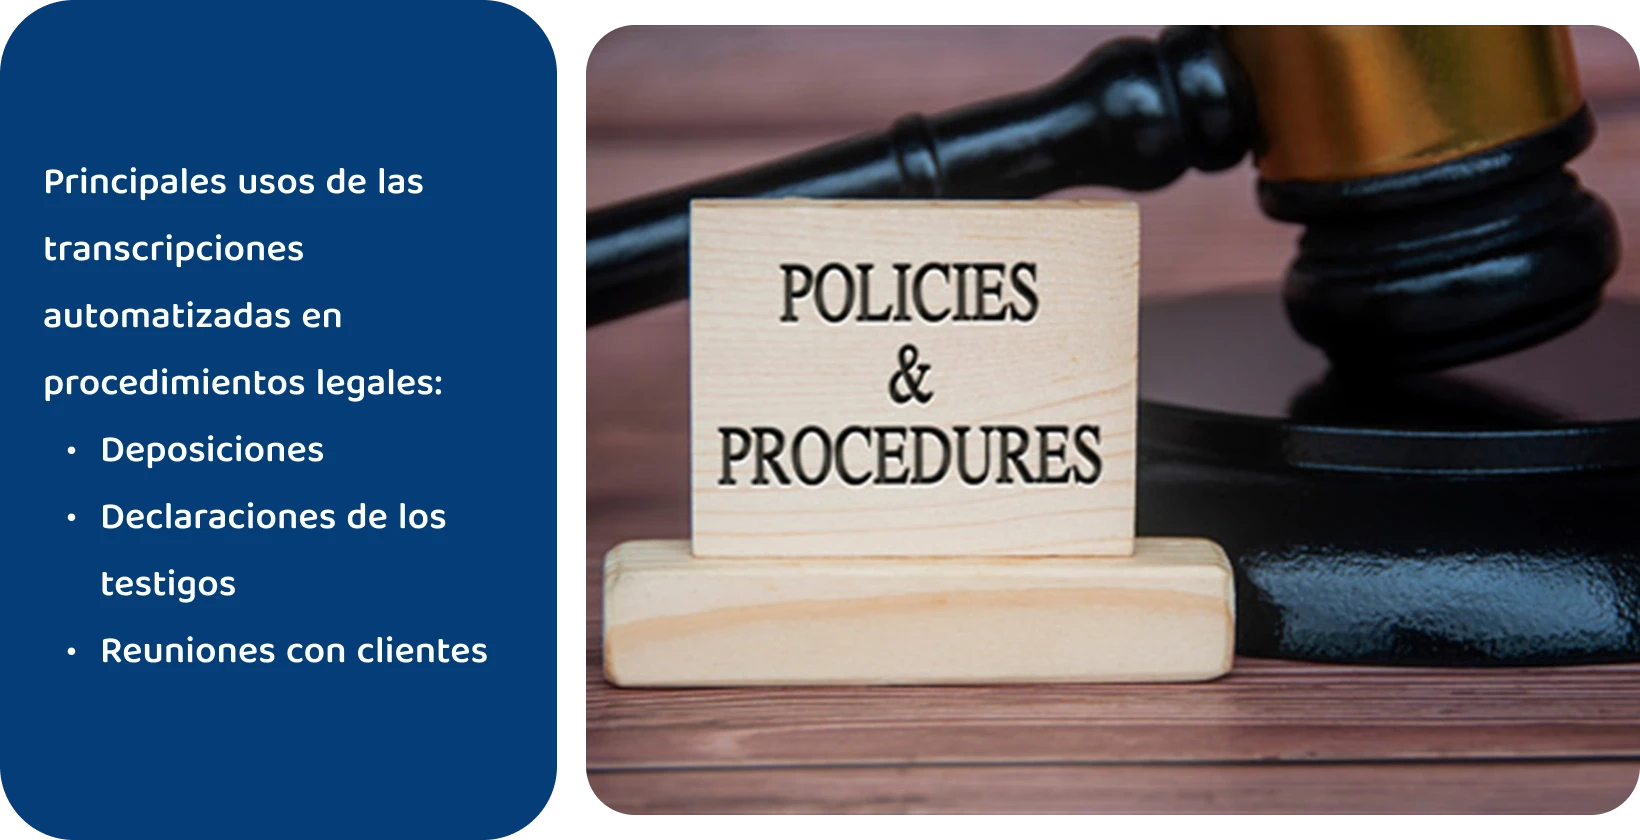 Mazo junto al letrero de "Políticas y procedimientos", que representa los estándares legales que cumplen las herramientas de transcripción automatizada.